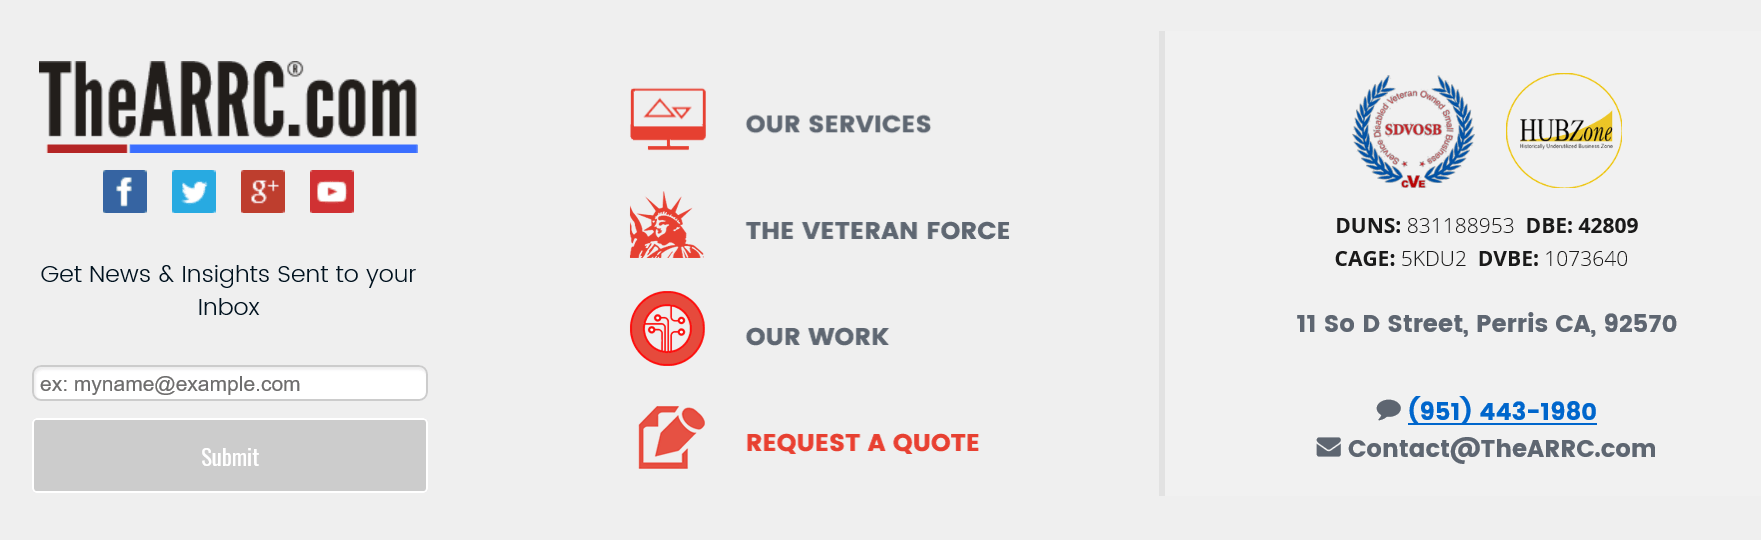 SDVOSB Logo - Opportunities For Veterans (opps4vets.com) Your CVE Logo